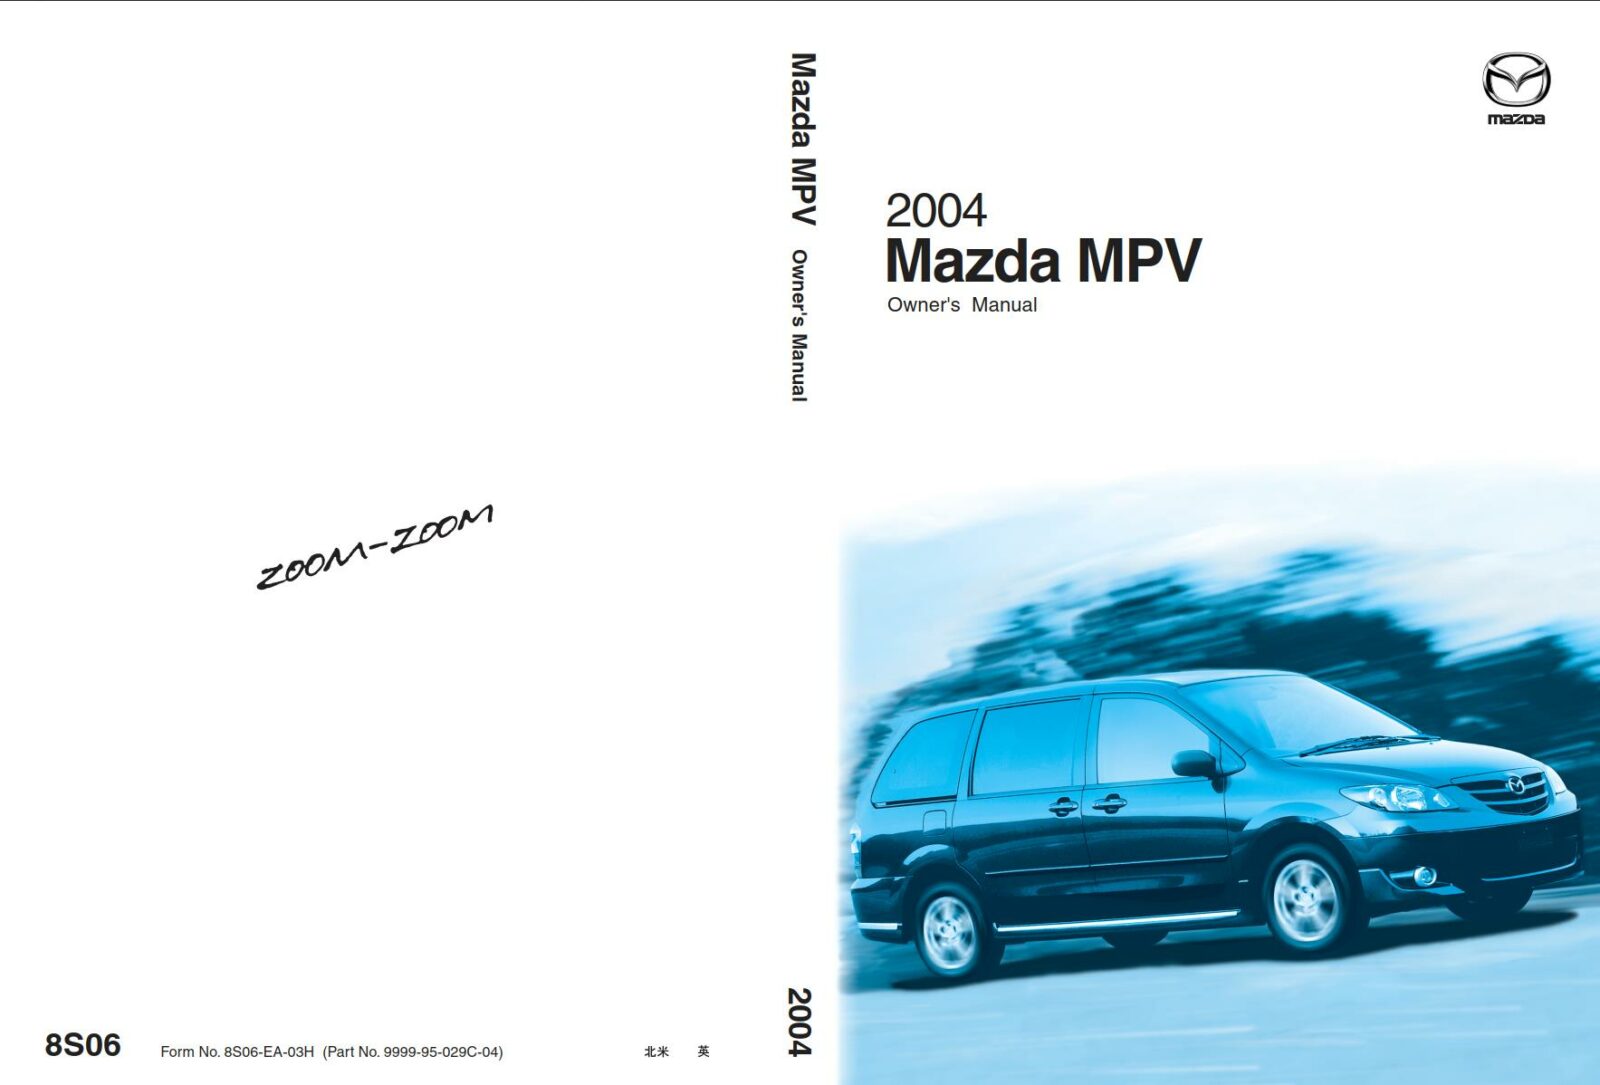 Mazda MPV 2004 Owner's Manual – PDF Download